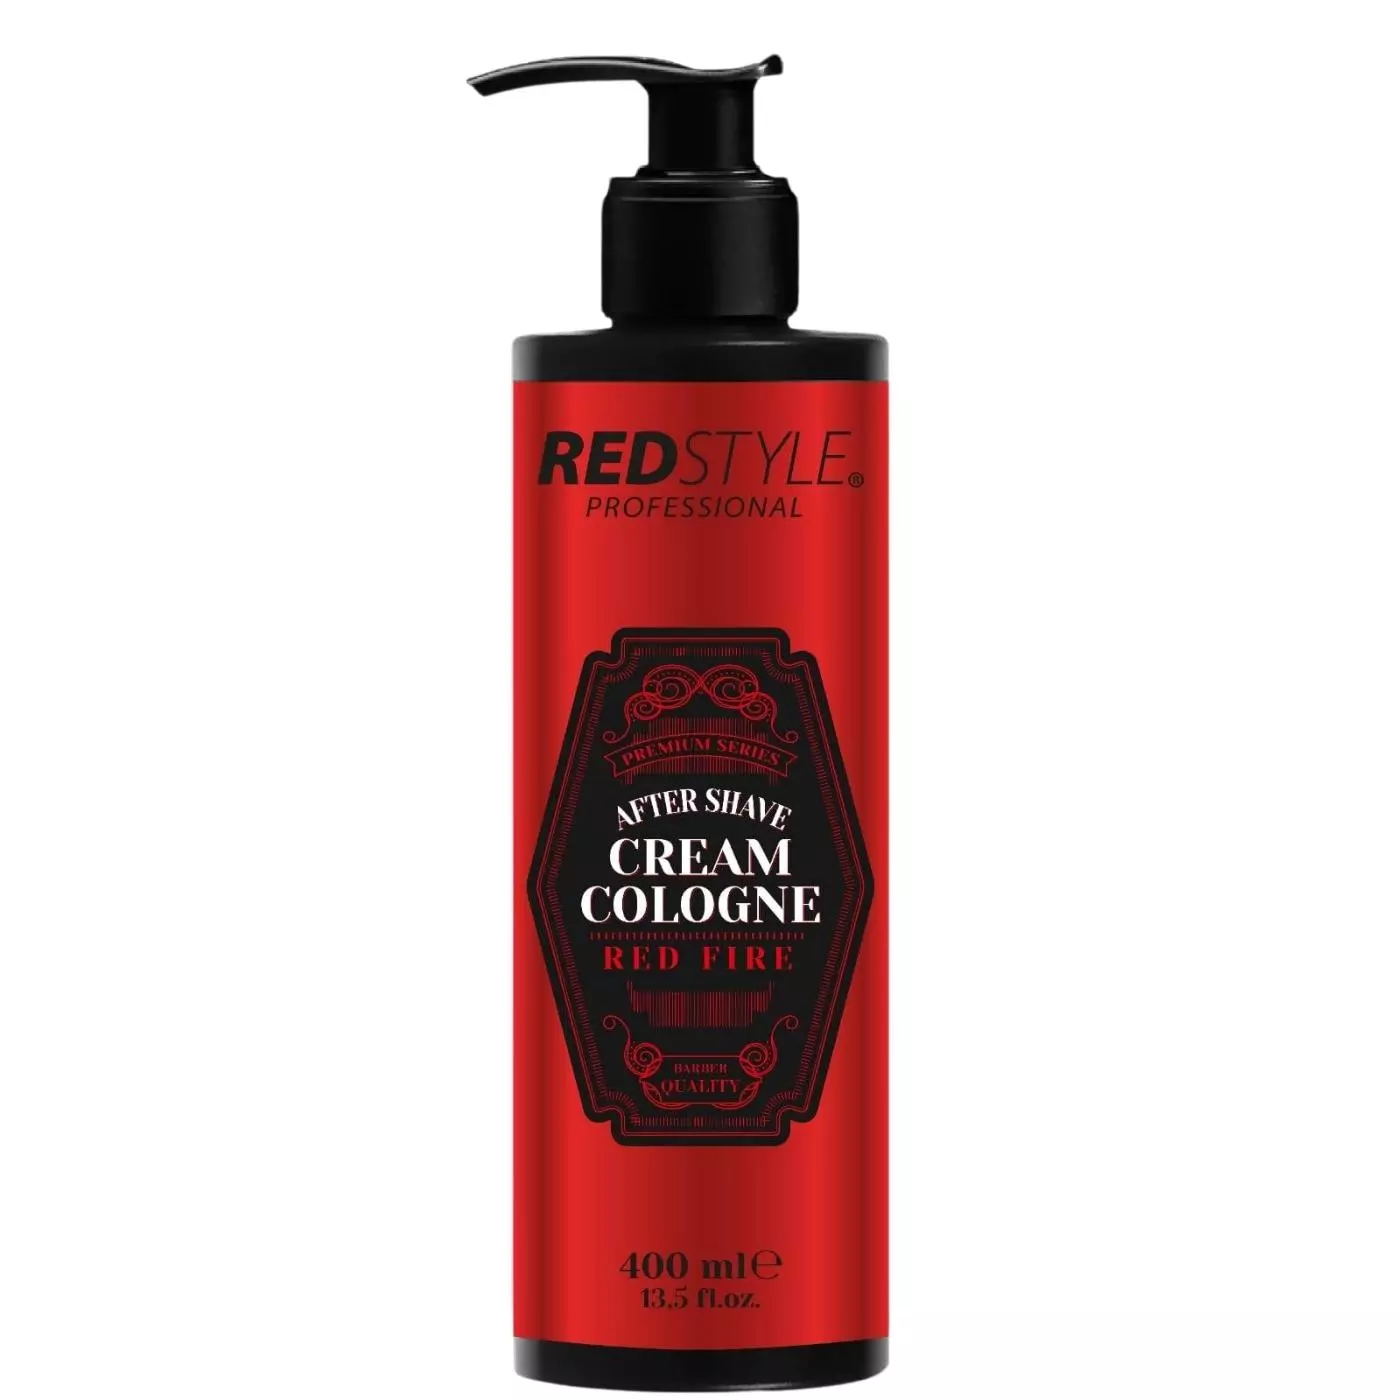 Redstyle Professional After Shave Cream Cologne - Balsam nach der Rasur, kÃ¼hlt und  pflegt   red fire